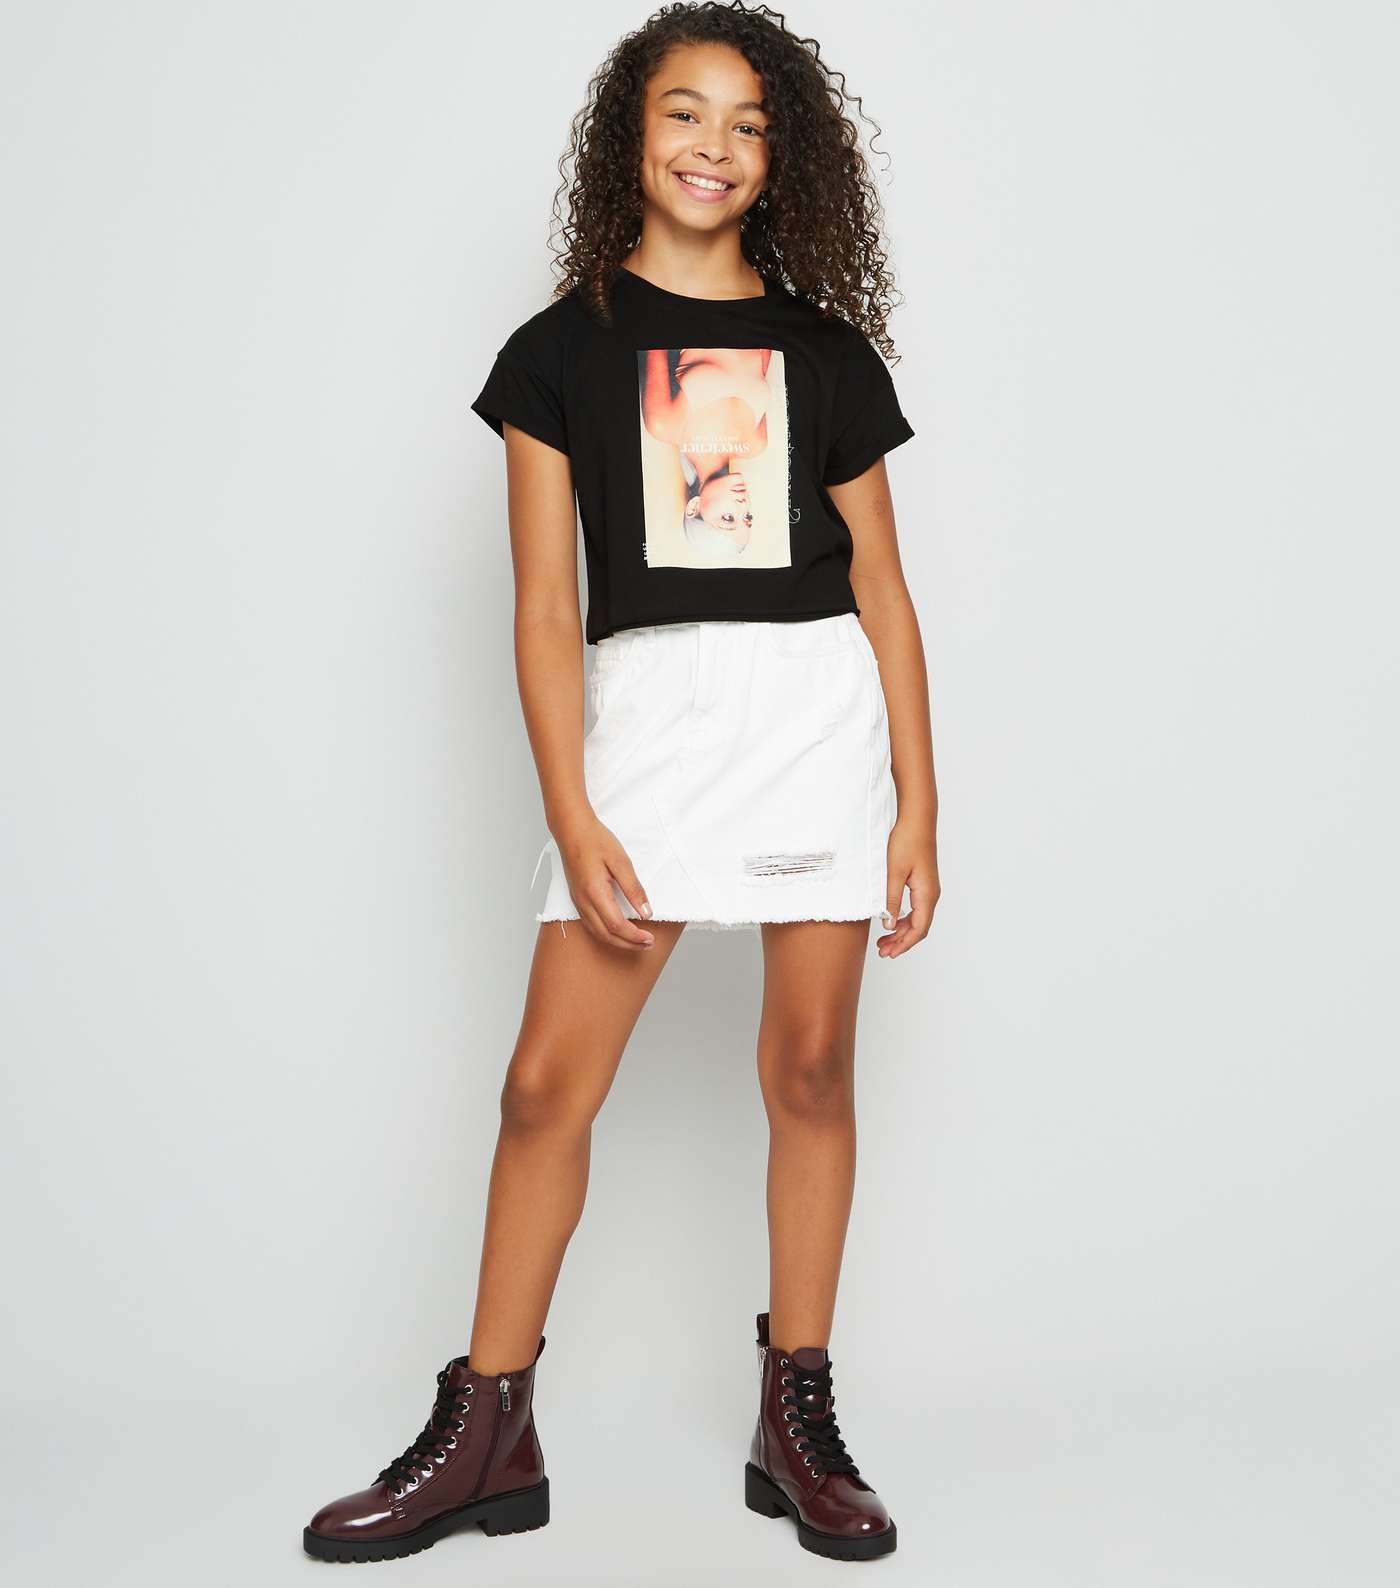 Girls Black Sweetener Ariana Grande Album T-Shirt Image 2